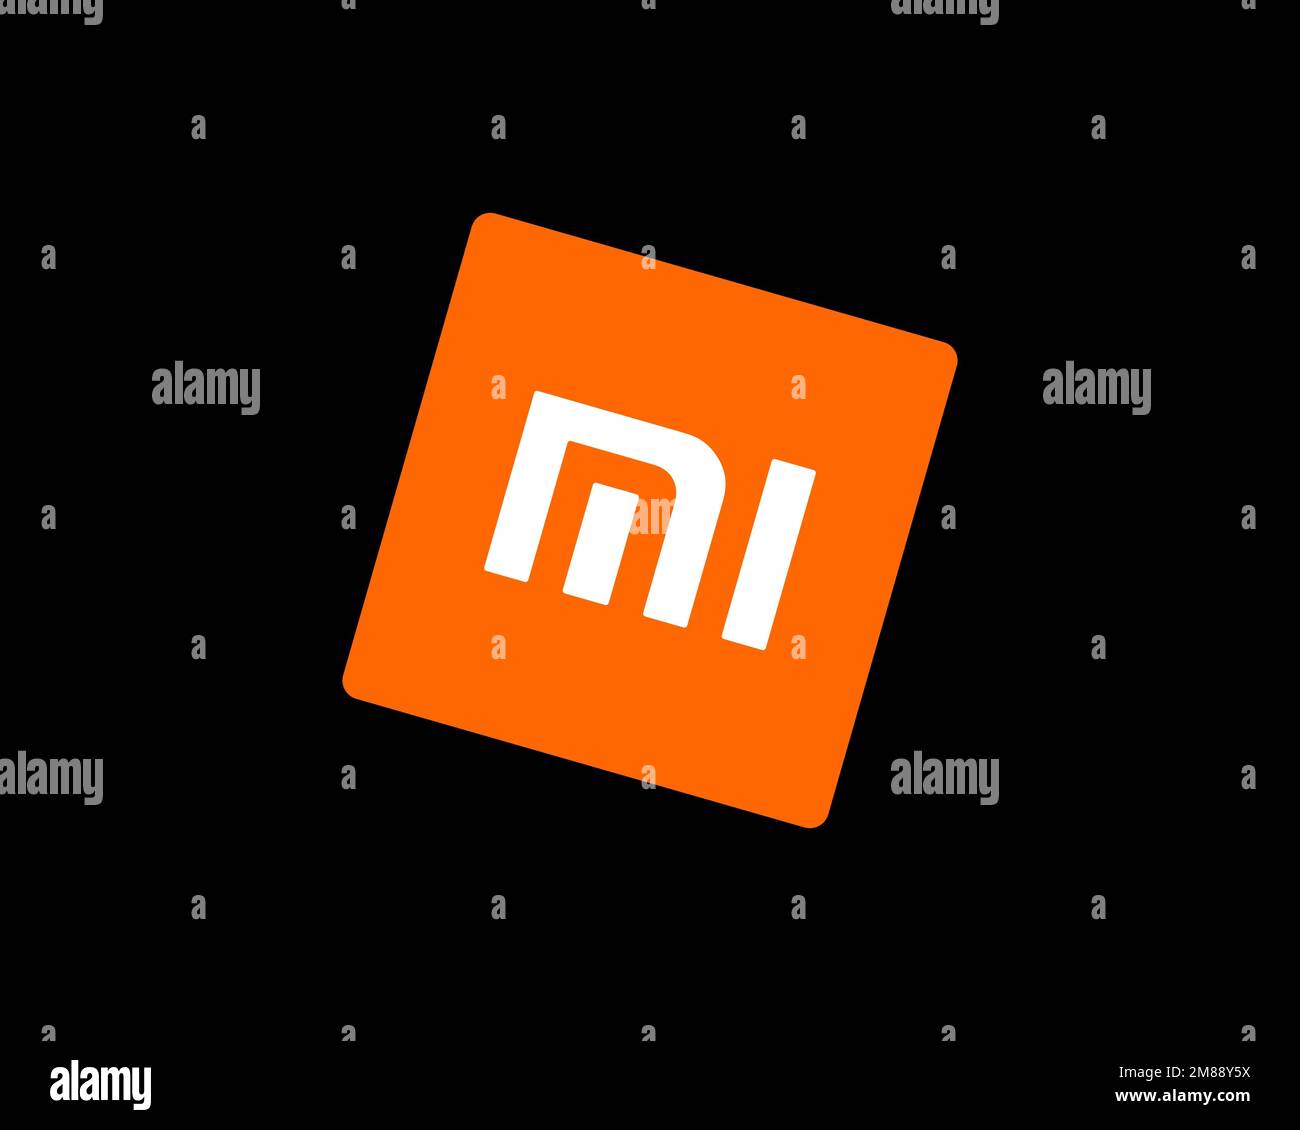 Logo Xiaomi trên nền đen rực rỡ sẽ khiến bạn ngẩn ngơ. Như một vì sao sáng lấp lánh trên bầu trời đêm, logo Xiaomi trên nền đen tạo nên được một hiệu ứng thị giác đầy ấn tượng. Hãy cùng khám phá ngay bức ảnh đầy trải nghiệm này!